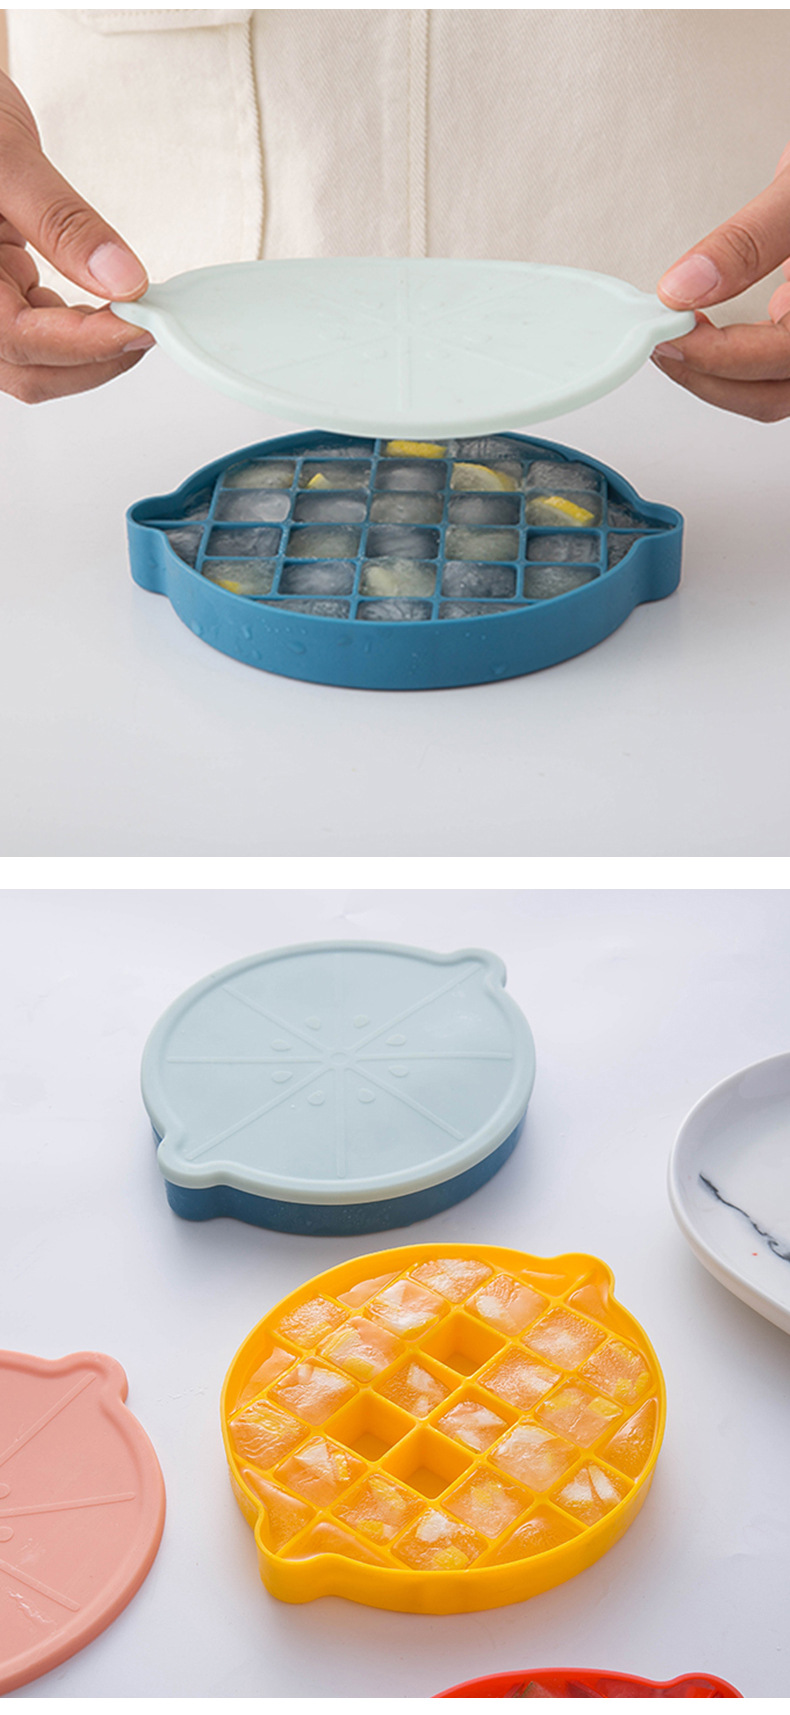 檸檬造型矽膠製冰盒 小清新加蓋矽膠製冰模型 創意居家26格製冰盒